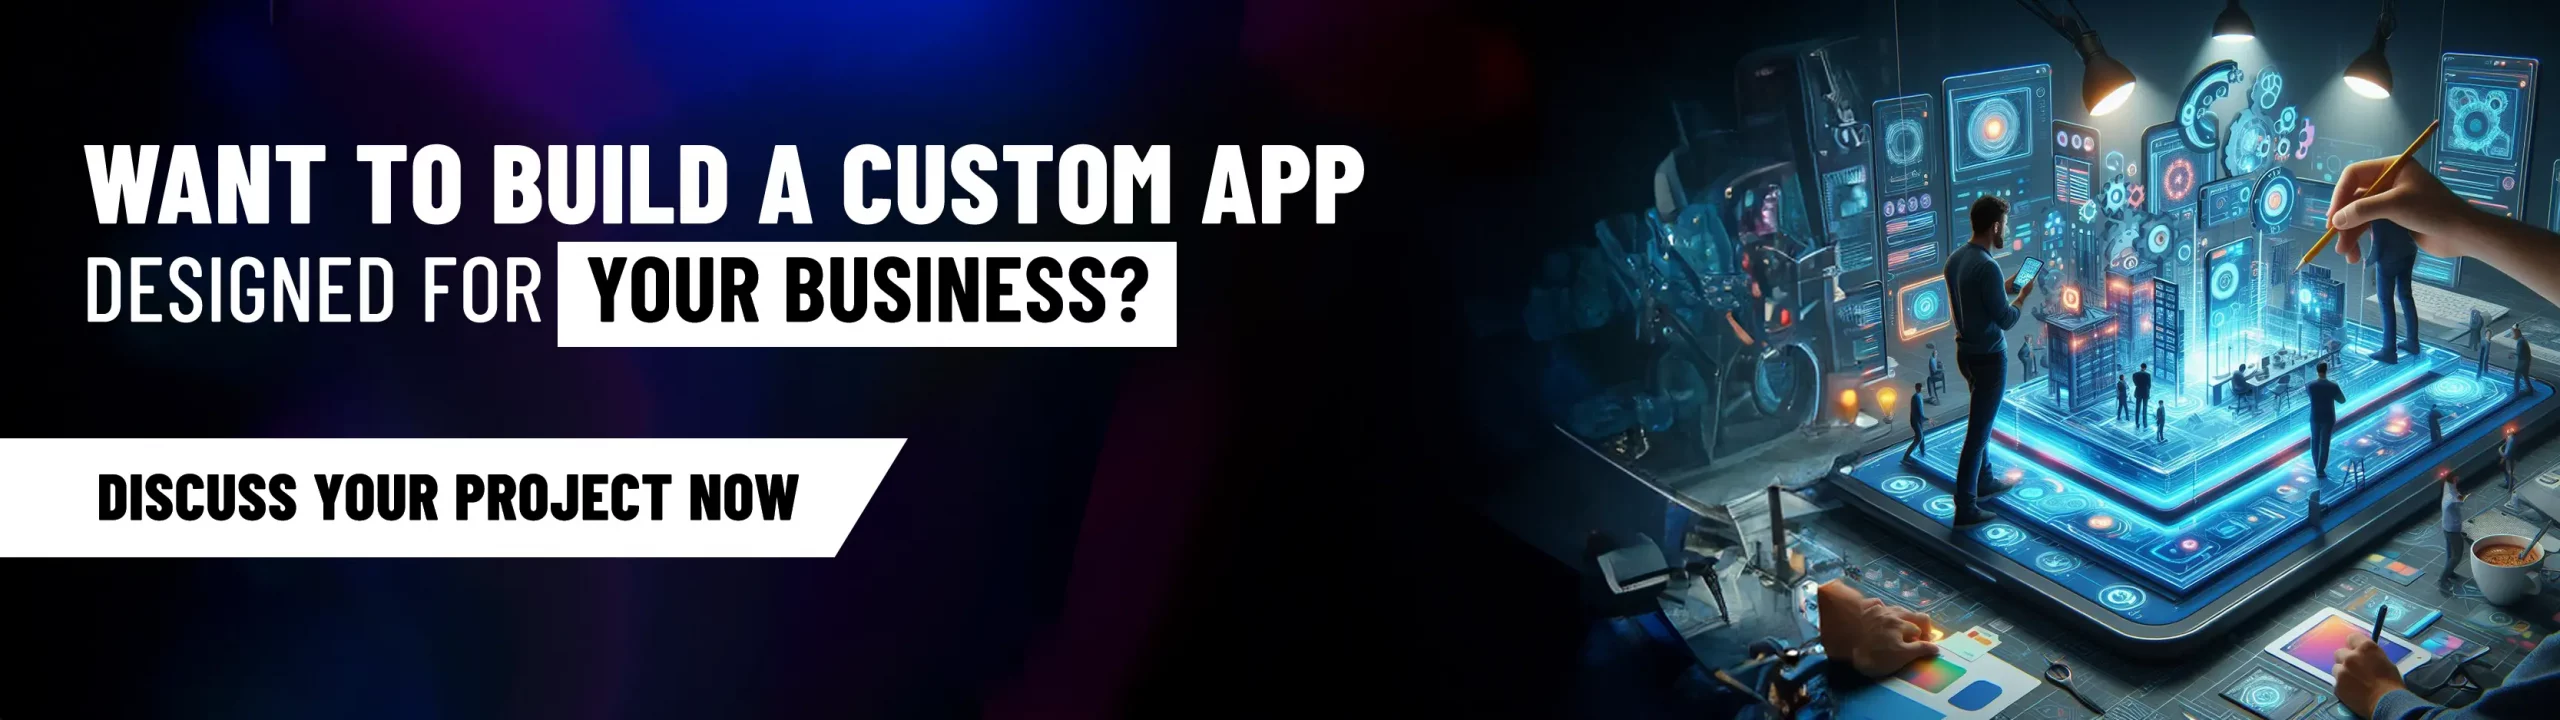 Build A Custom App